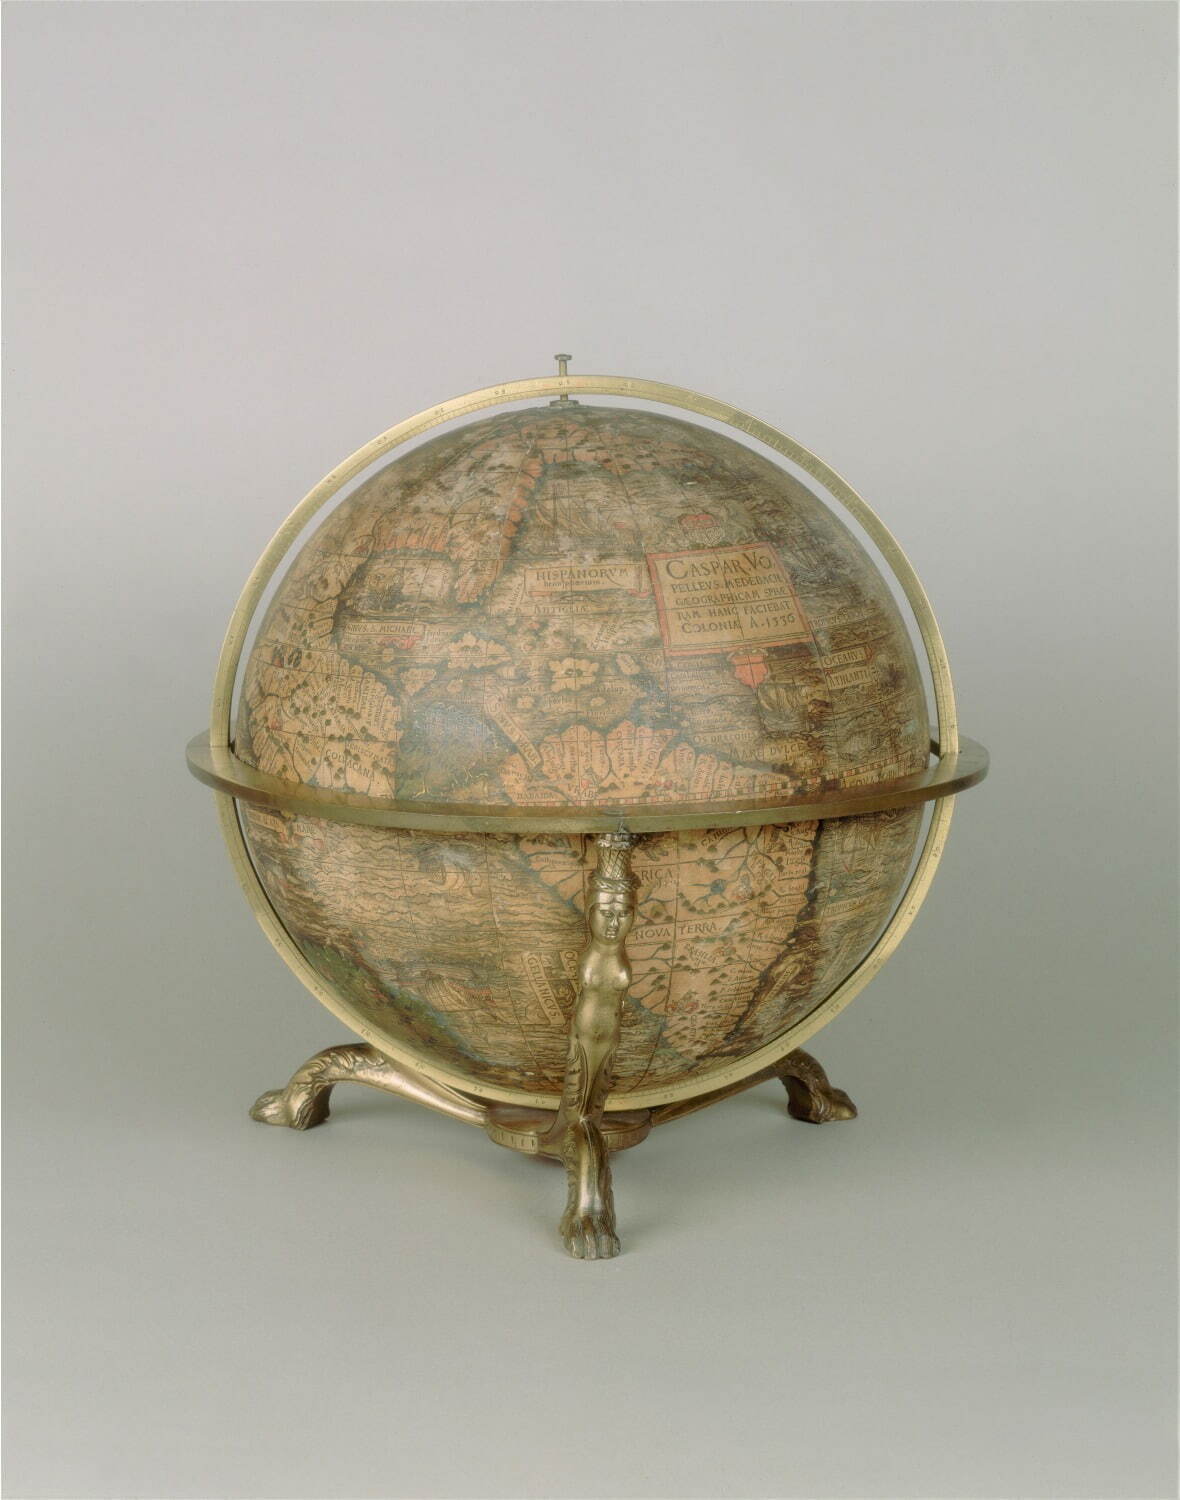 フォペルが製作した「地球儀」
(フォペル作としては現存最古の資料)